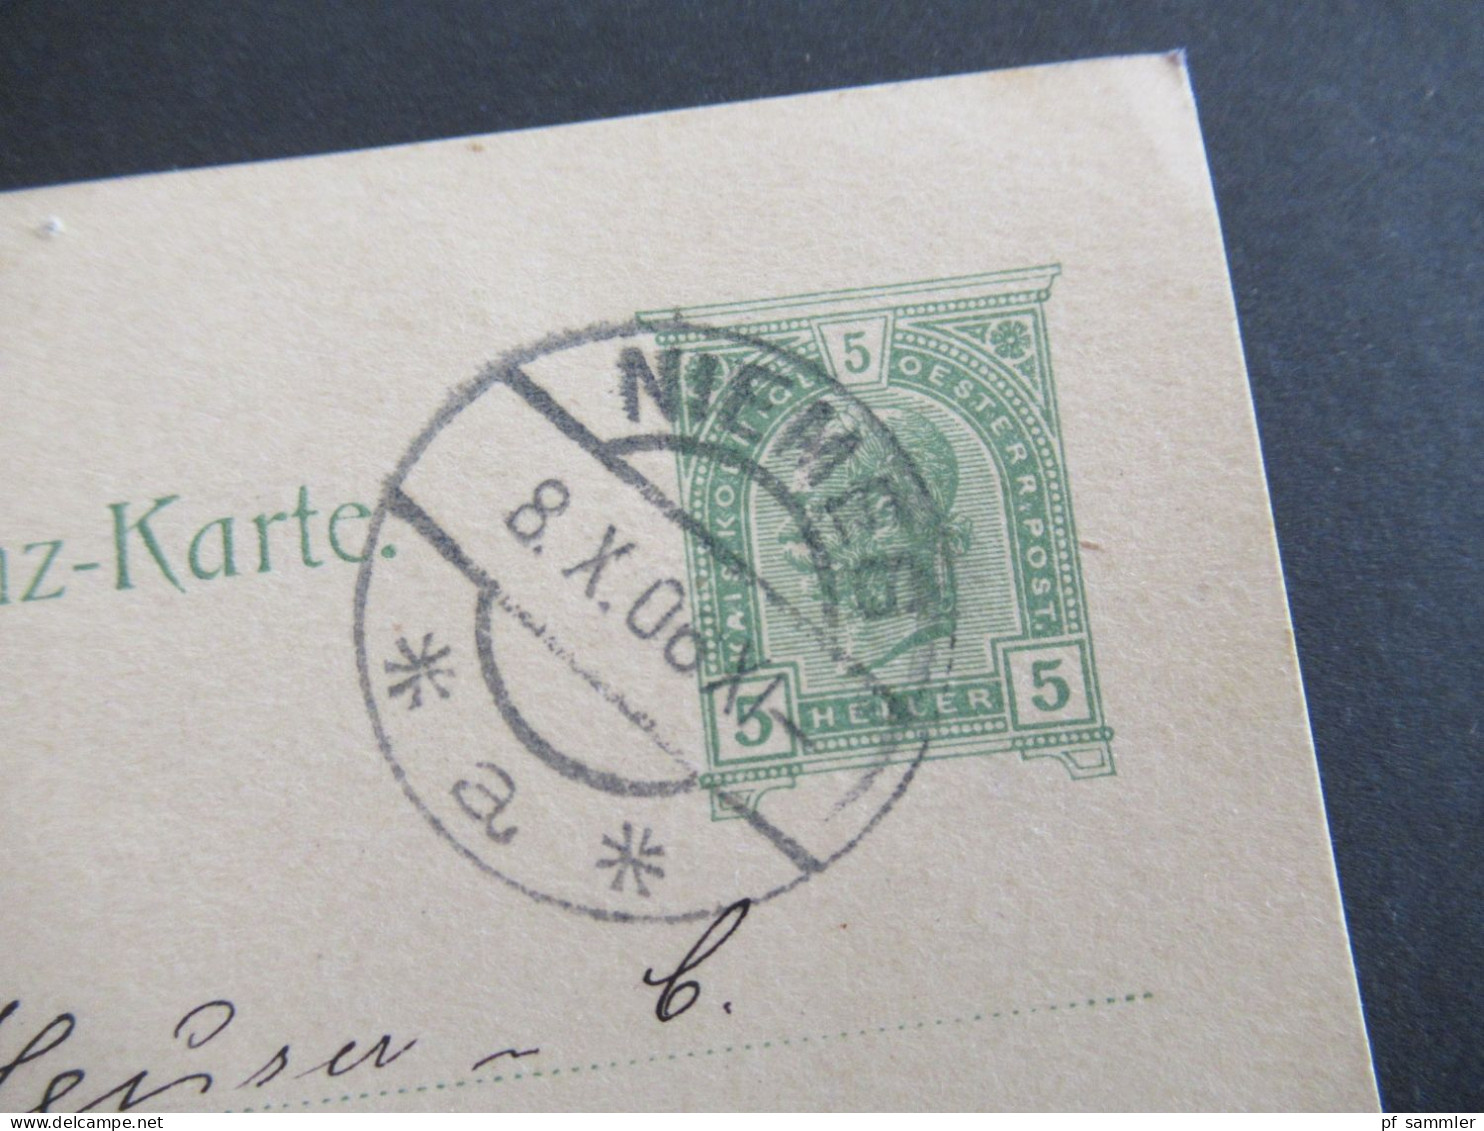 1906 Österreich Ganzsache 5 Heller Stp. Niemes / Mimoň Tschechien Nach Hannover Mit Ank. Gitterstempel Hannover *1hh - Postcards